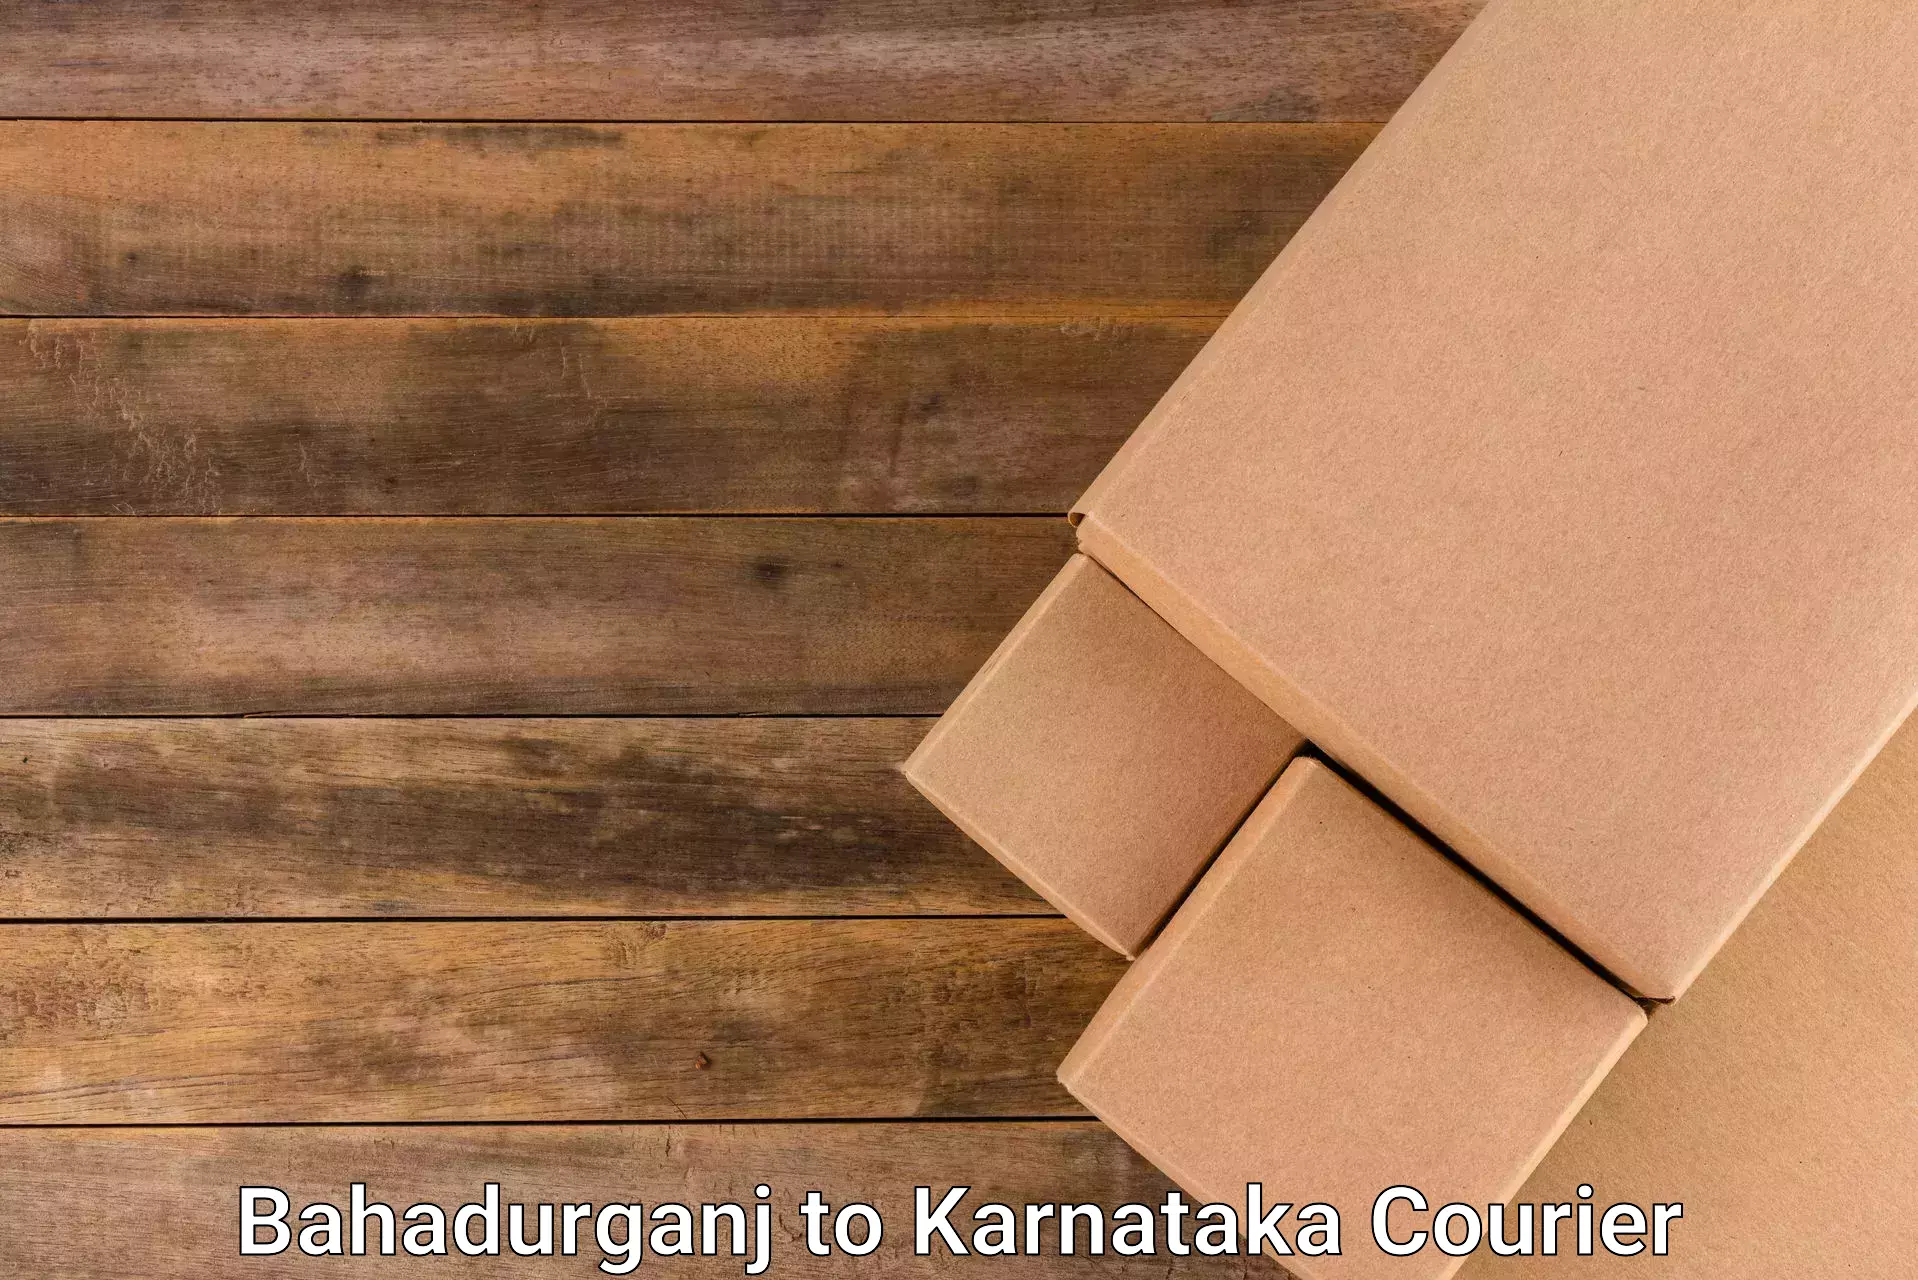 Professional parcel services Bahadurganj to Mangalore